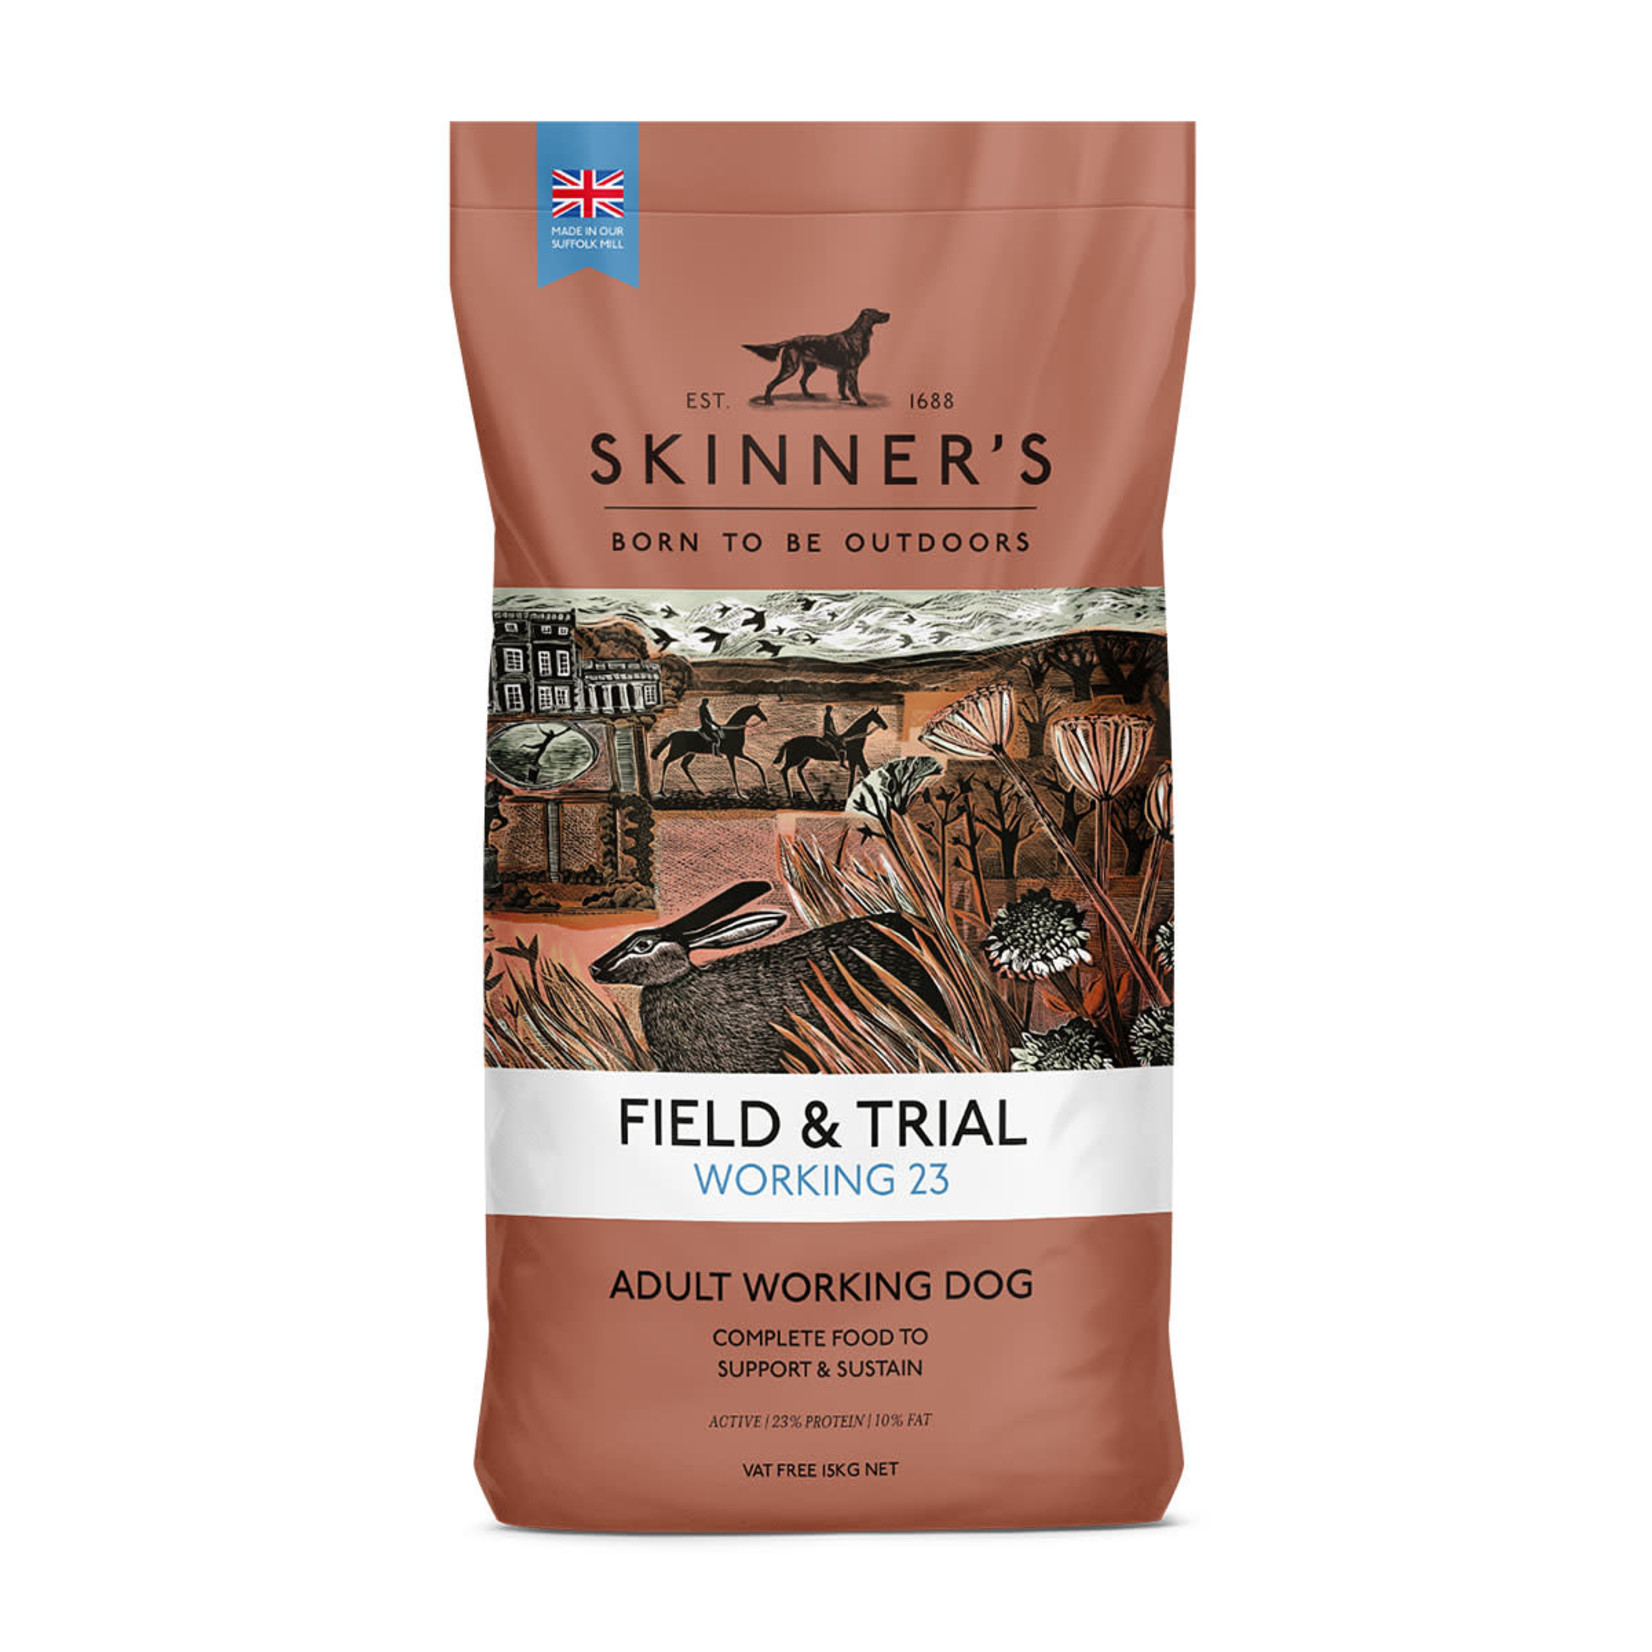 Skinners Field & Trial Working 23 Dog Dry Food, 15kg